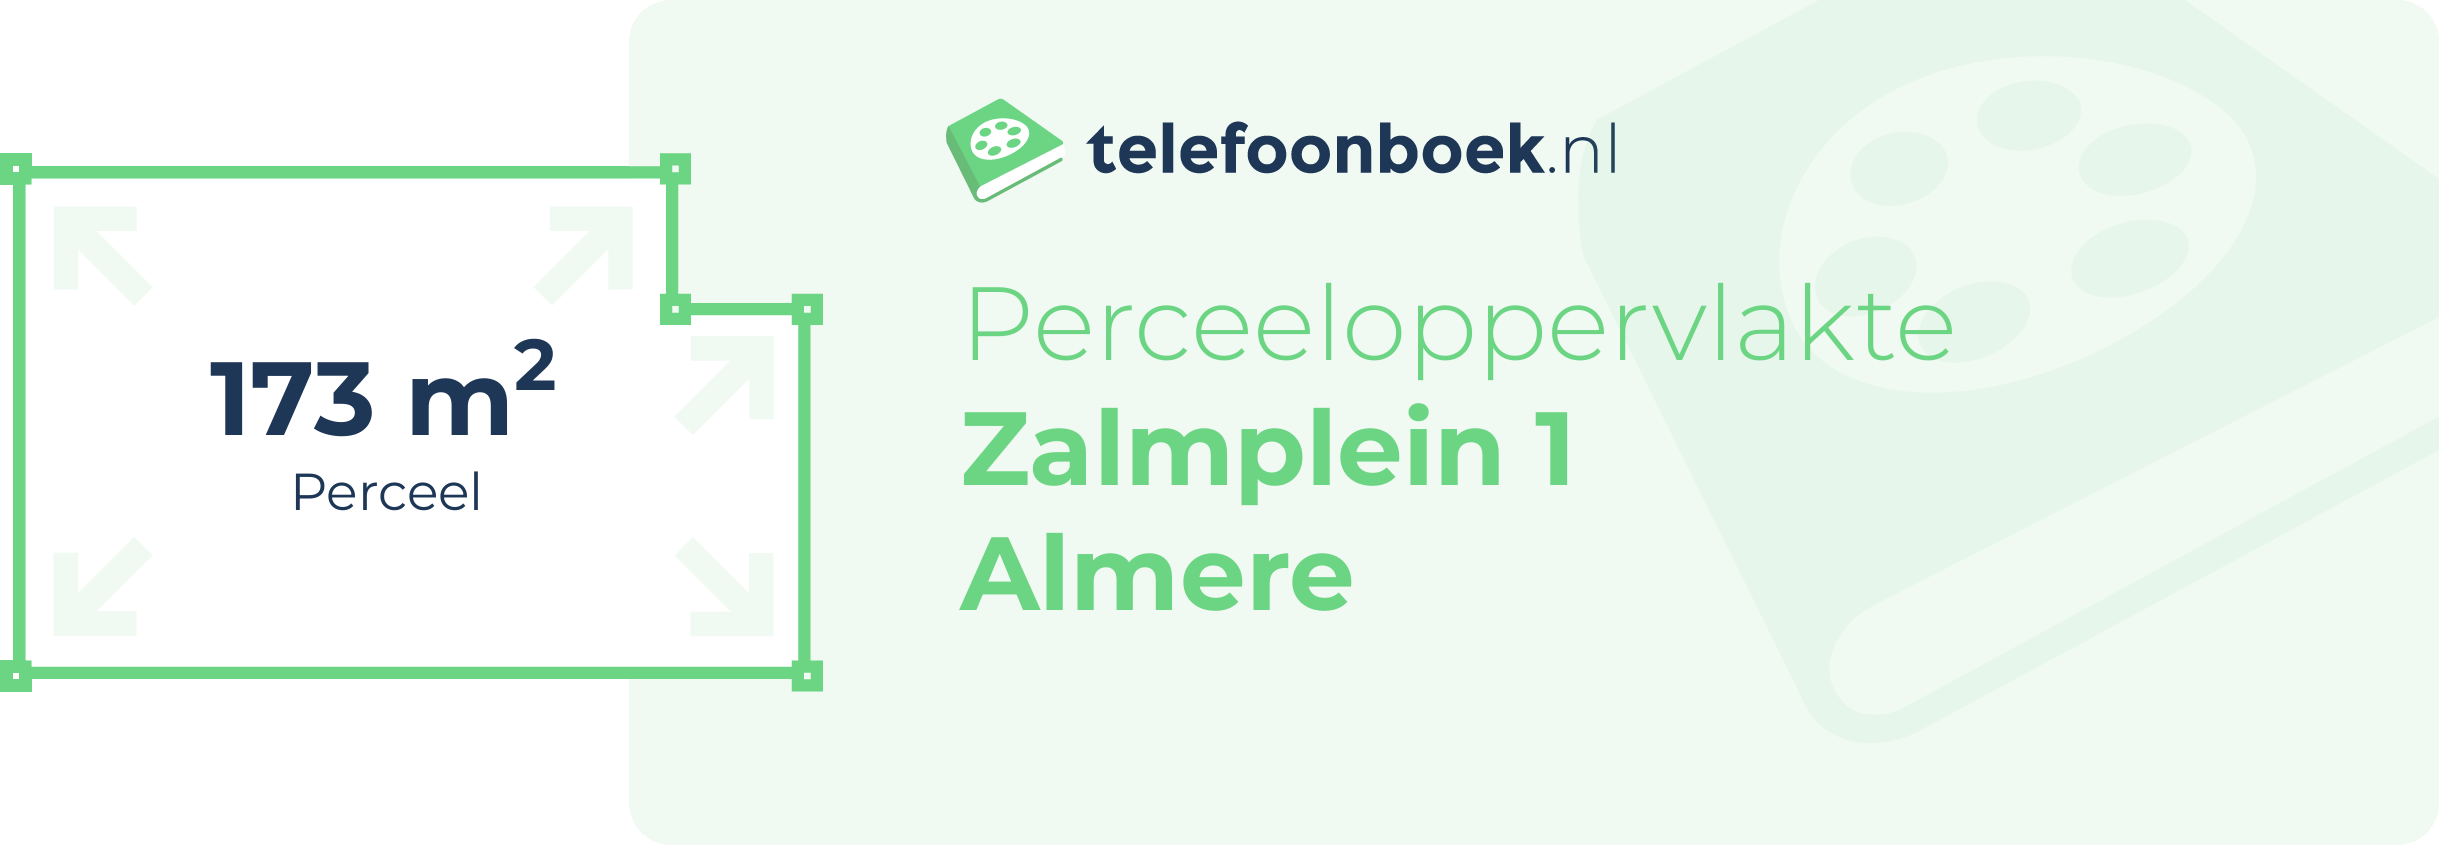 Perceeloppervlakte Zalmplein 1 Almere